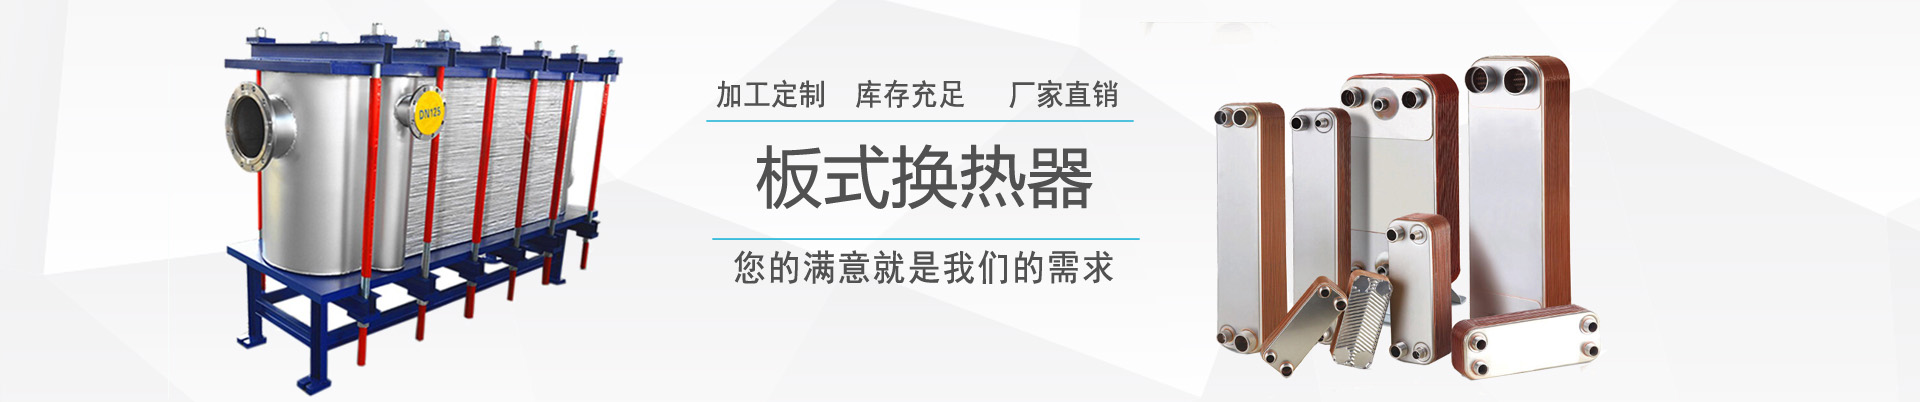 行業新聞 - 新聞中心 - ,換熱器,板式換熱器,換熱器機組,上海將星化工設備有限公司